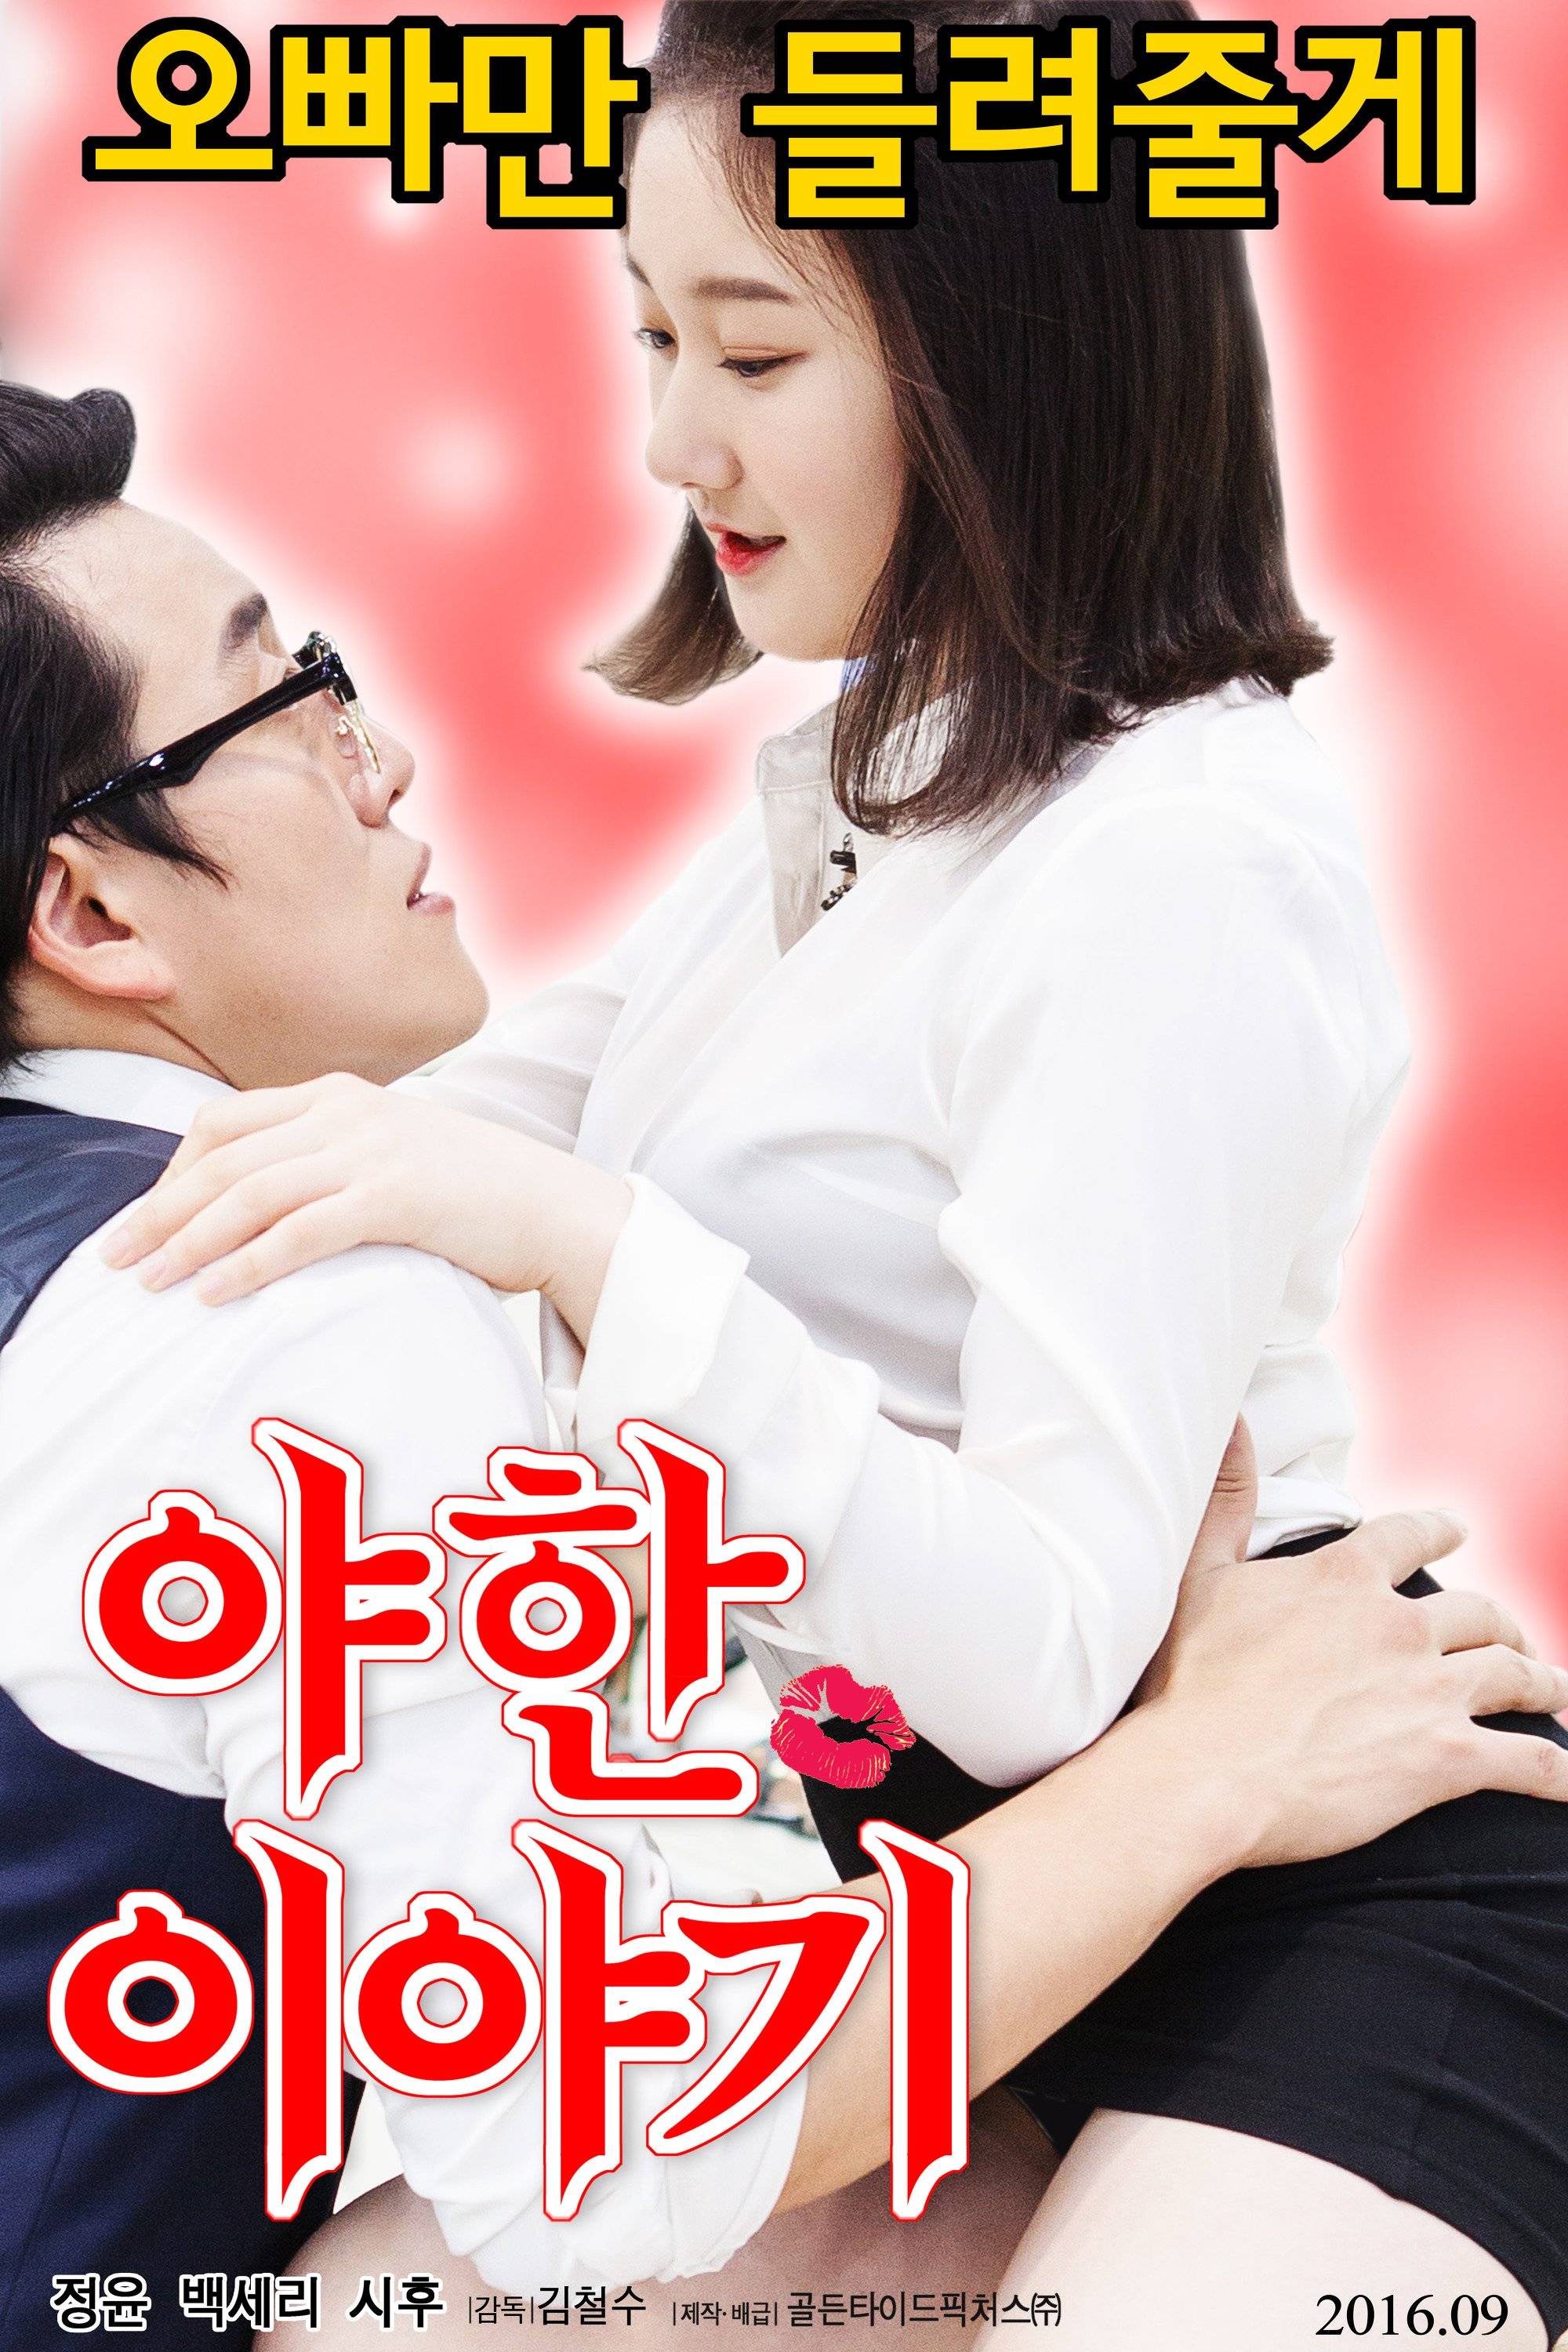 erotic drama Korean